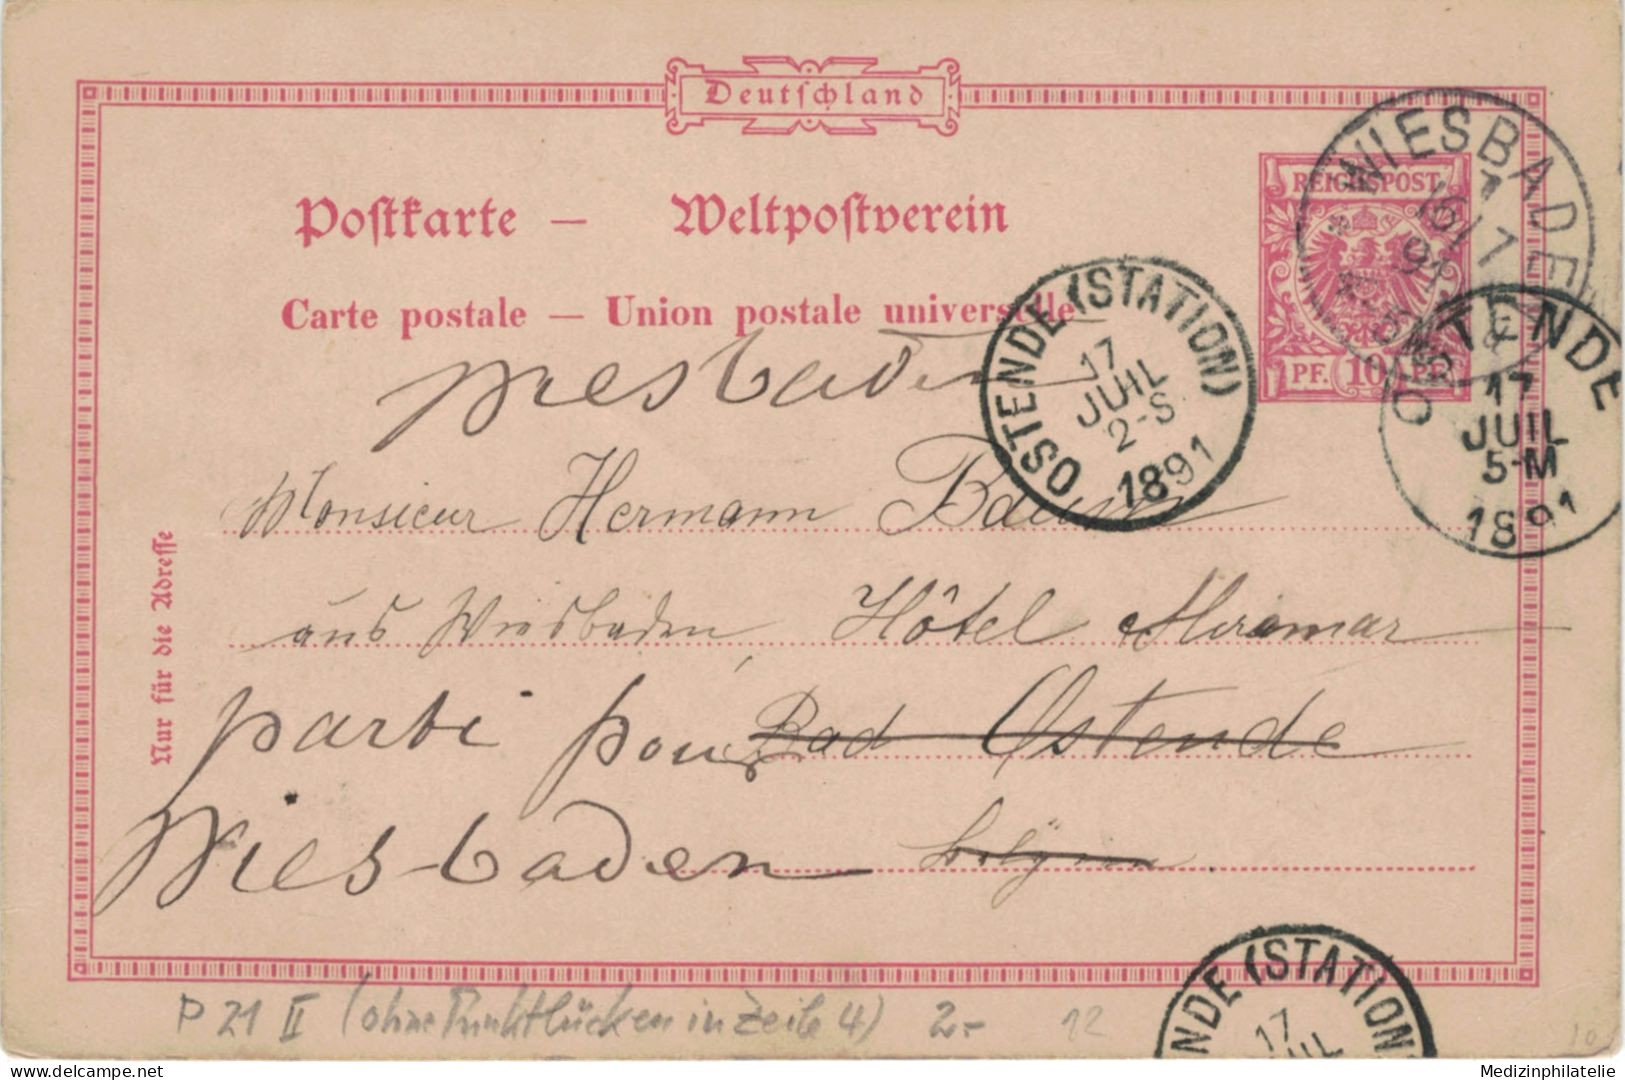 Ganzsache 10 Pfennig - Wiesbaden 1891 > Ostende Station, - Postkarten